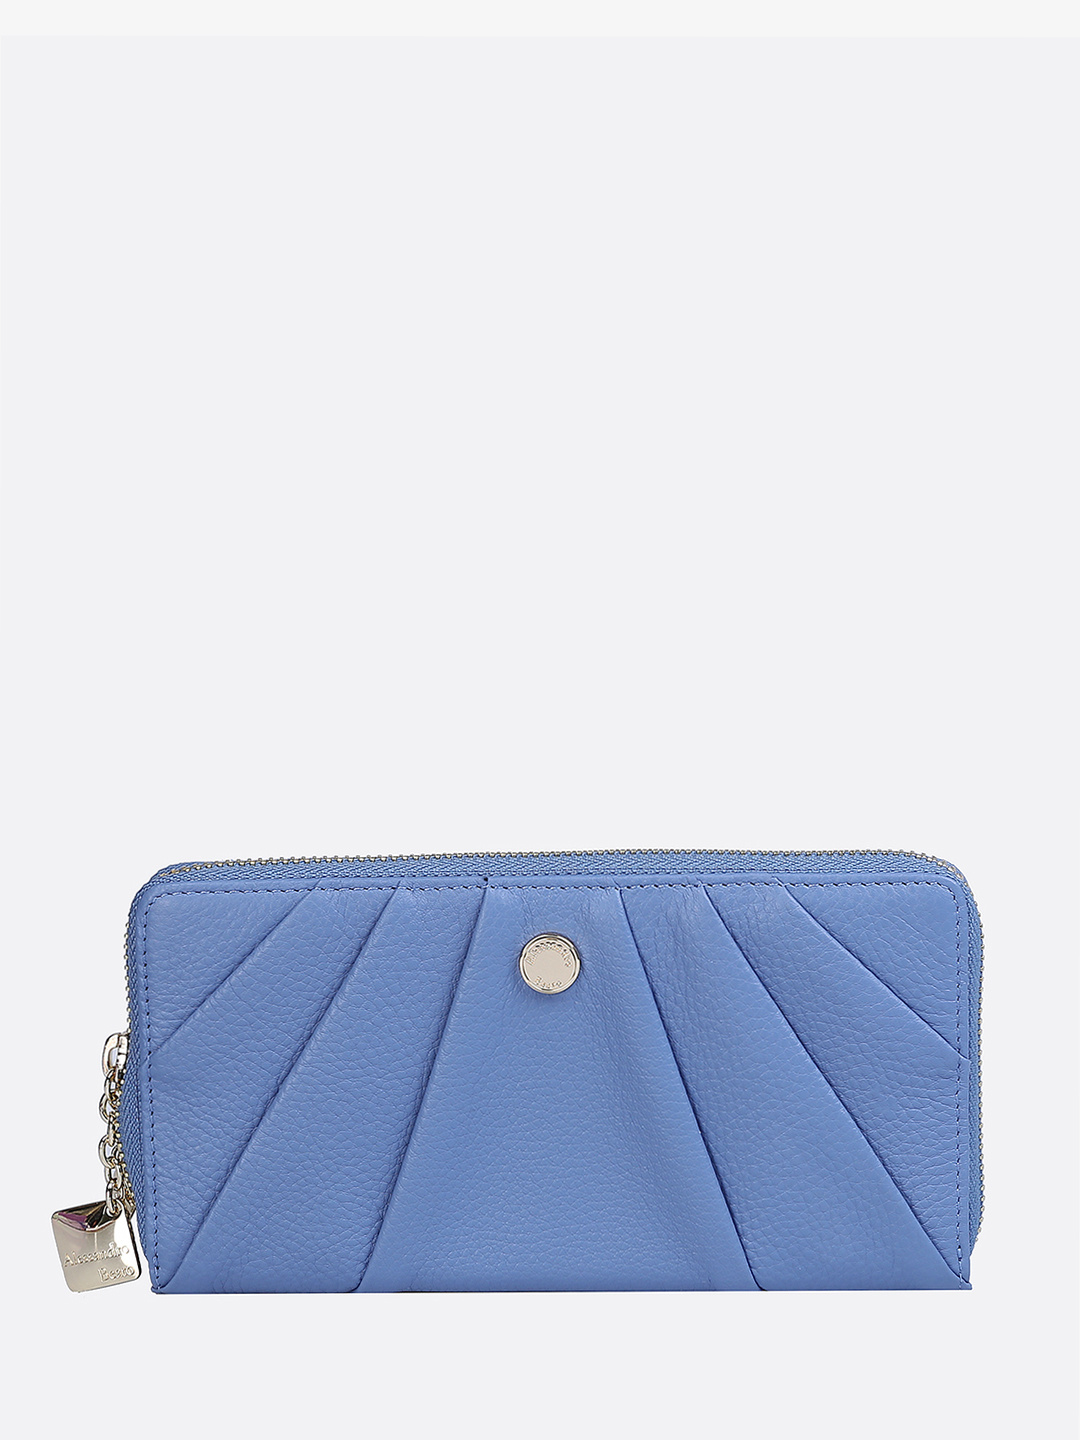 Фото Классический женский кошелек на молнии из мягкой светло-голубой кожи Кошельки